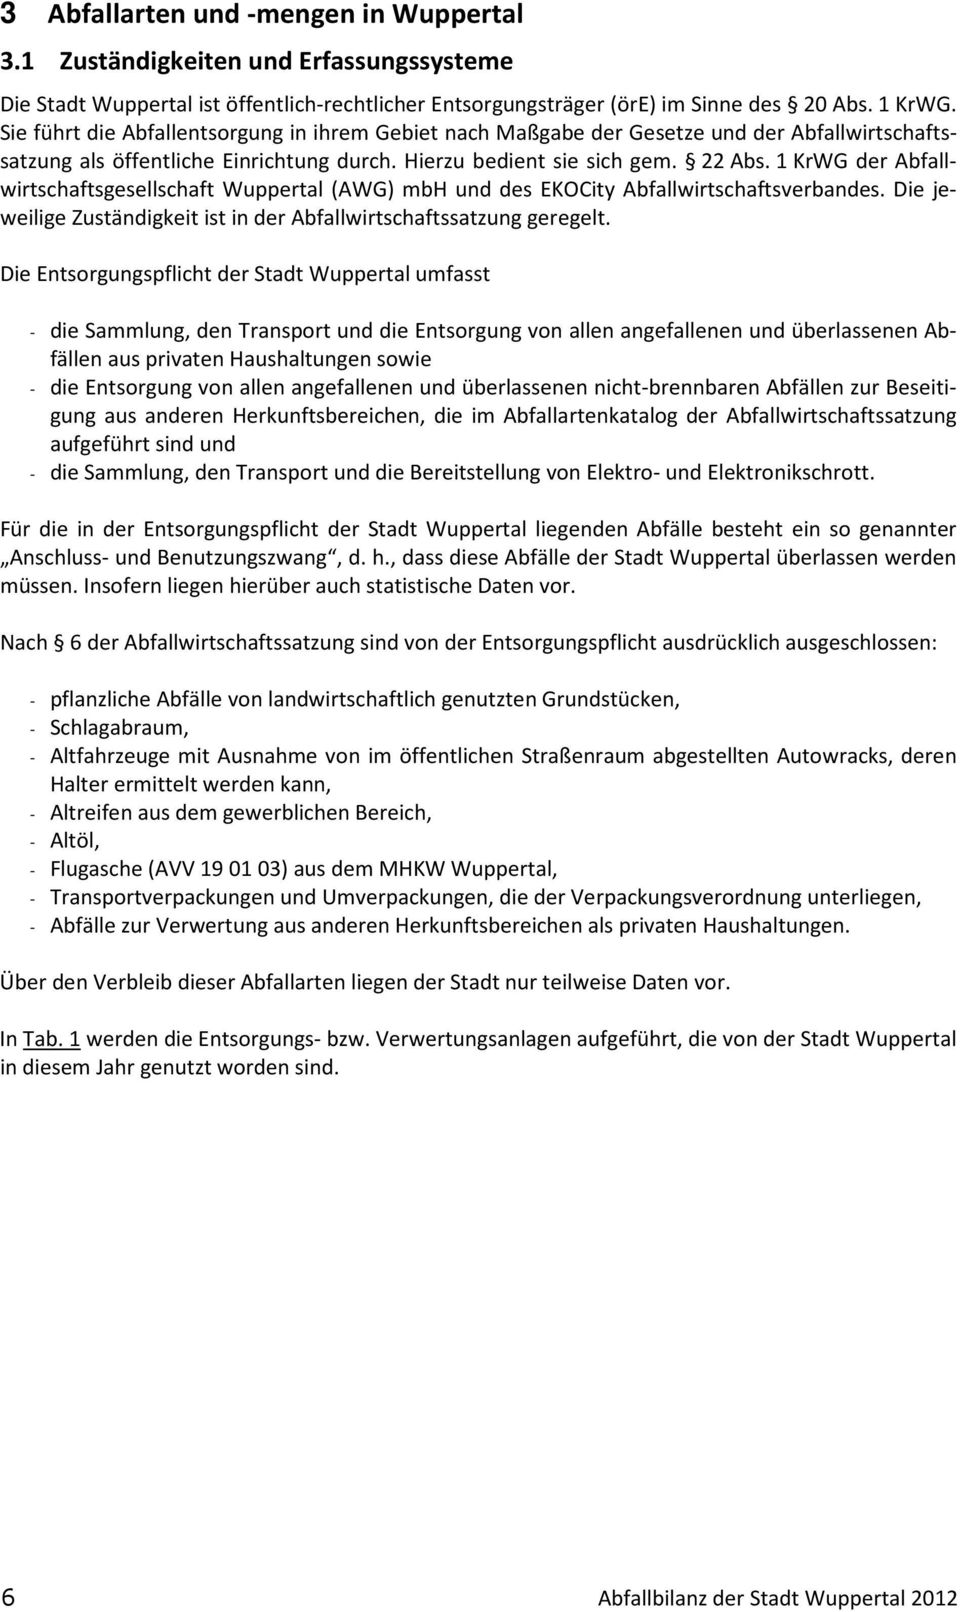 1 KrWG der Abfallwirtschaftsgesellschaft Wuppertal () mbh und des EKOCity Abfallwirtschaftsverbandes. Die jeweilige Zuständigkeit ist in der Abfallwirtschaftssatzung geregelt.